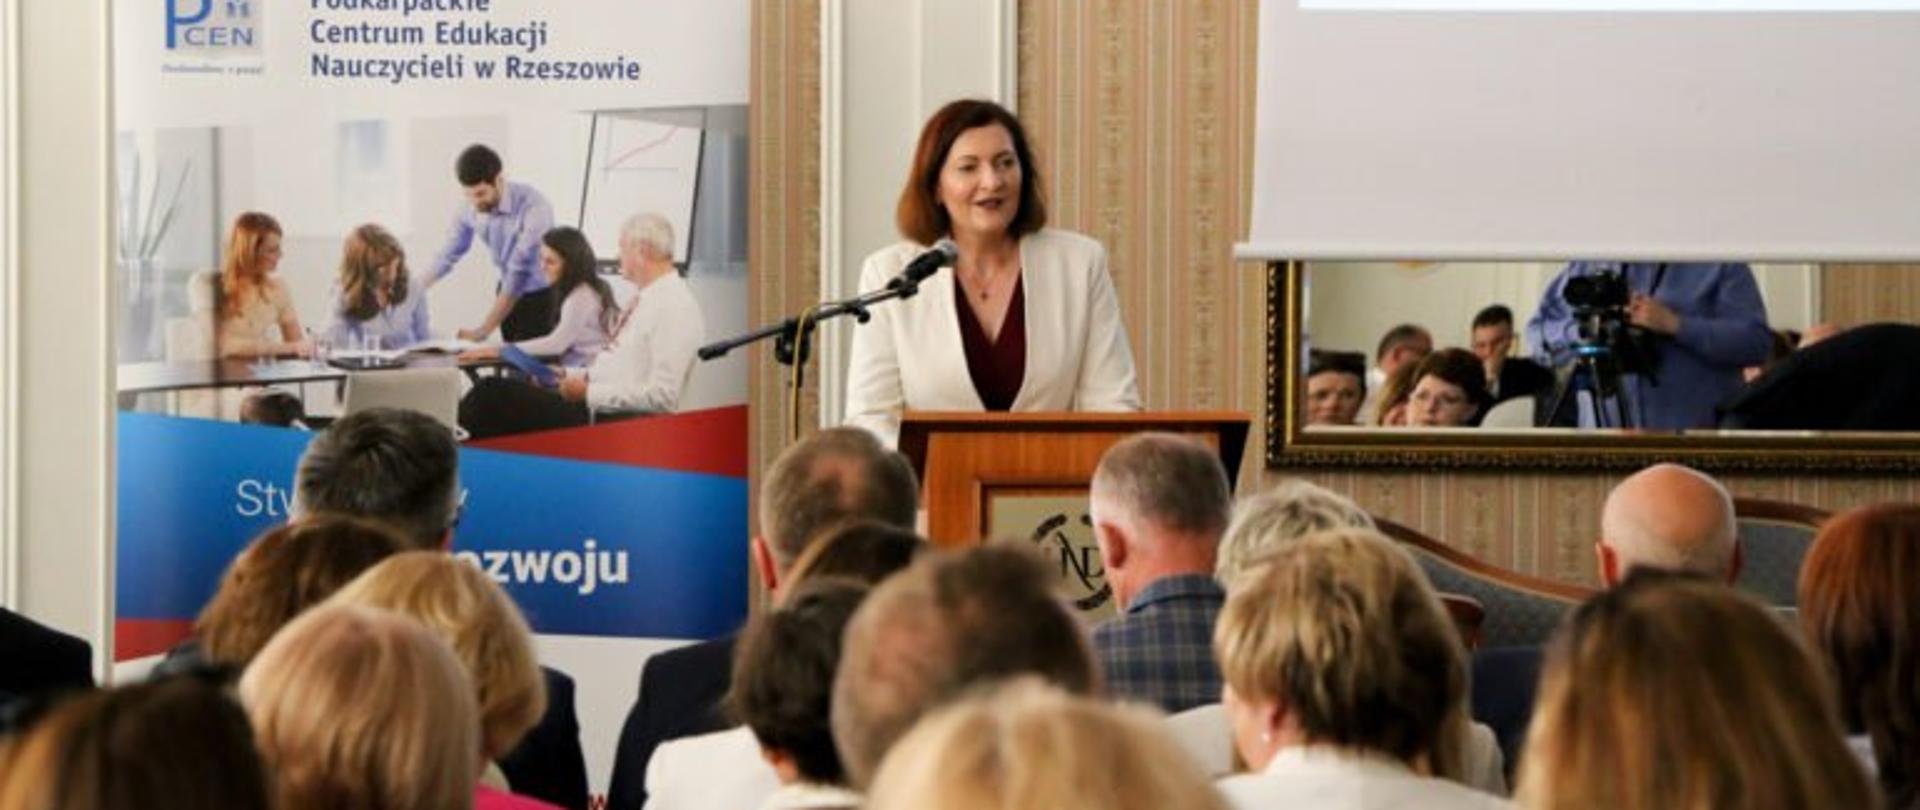 Wojewoda podkarpacki Ewa Leniart podczas przemówienia otwierającego konferencję II Ogólnopolskiego Forum Doskonalenia Kadr Oświaty